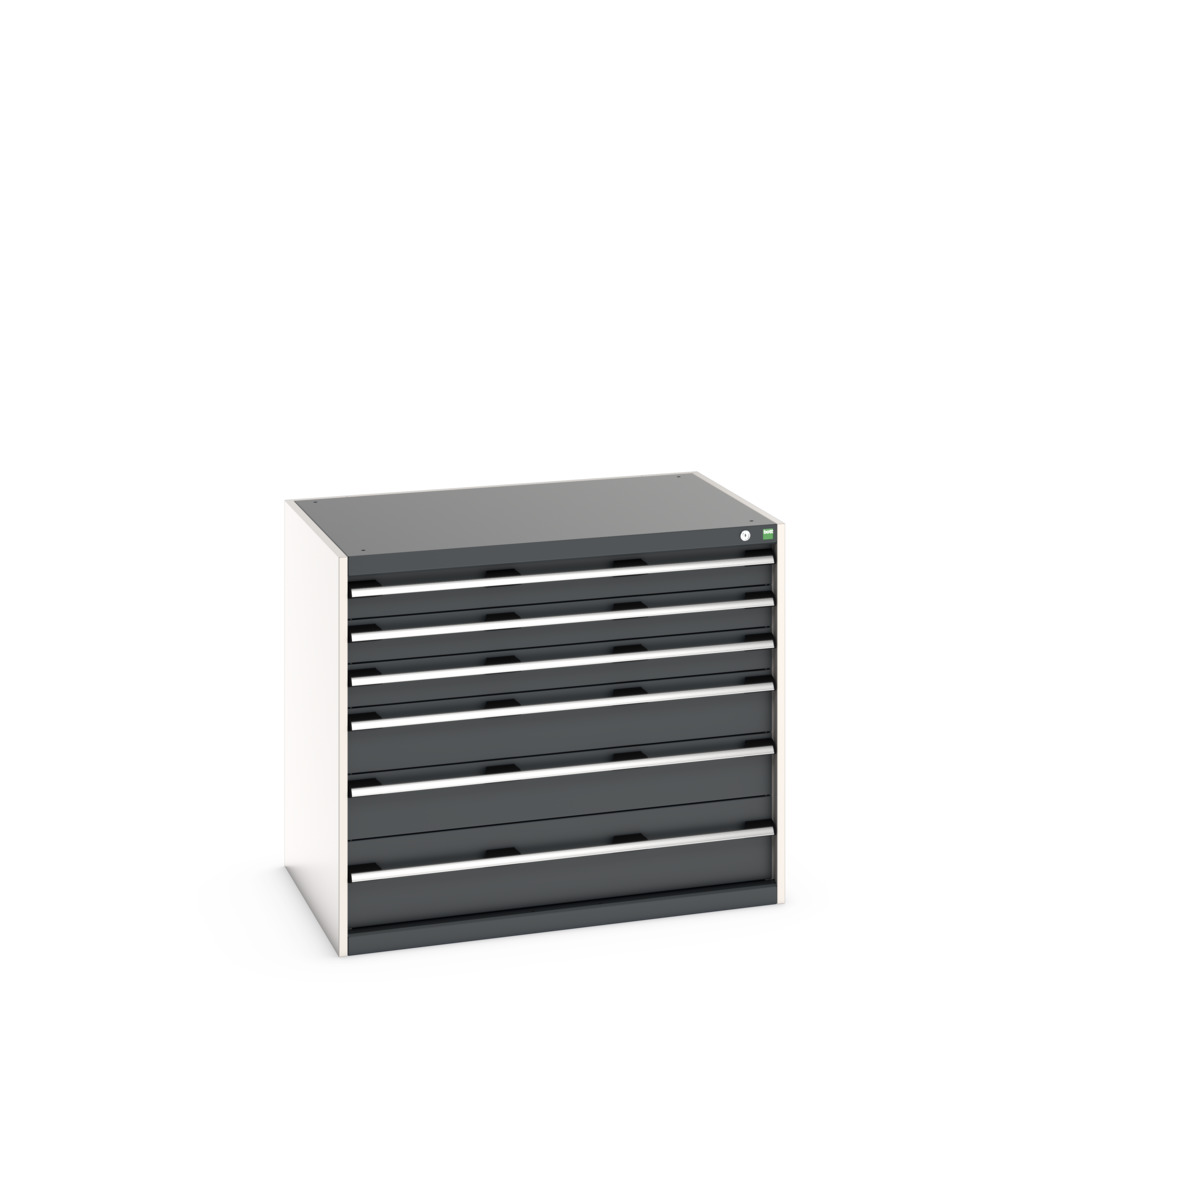 40029104.19V - cubio drawer cabinet